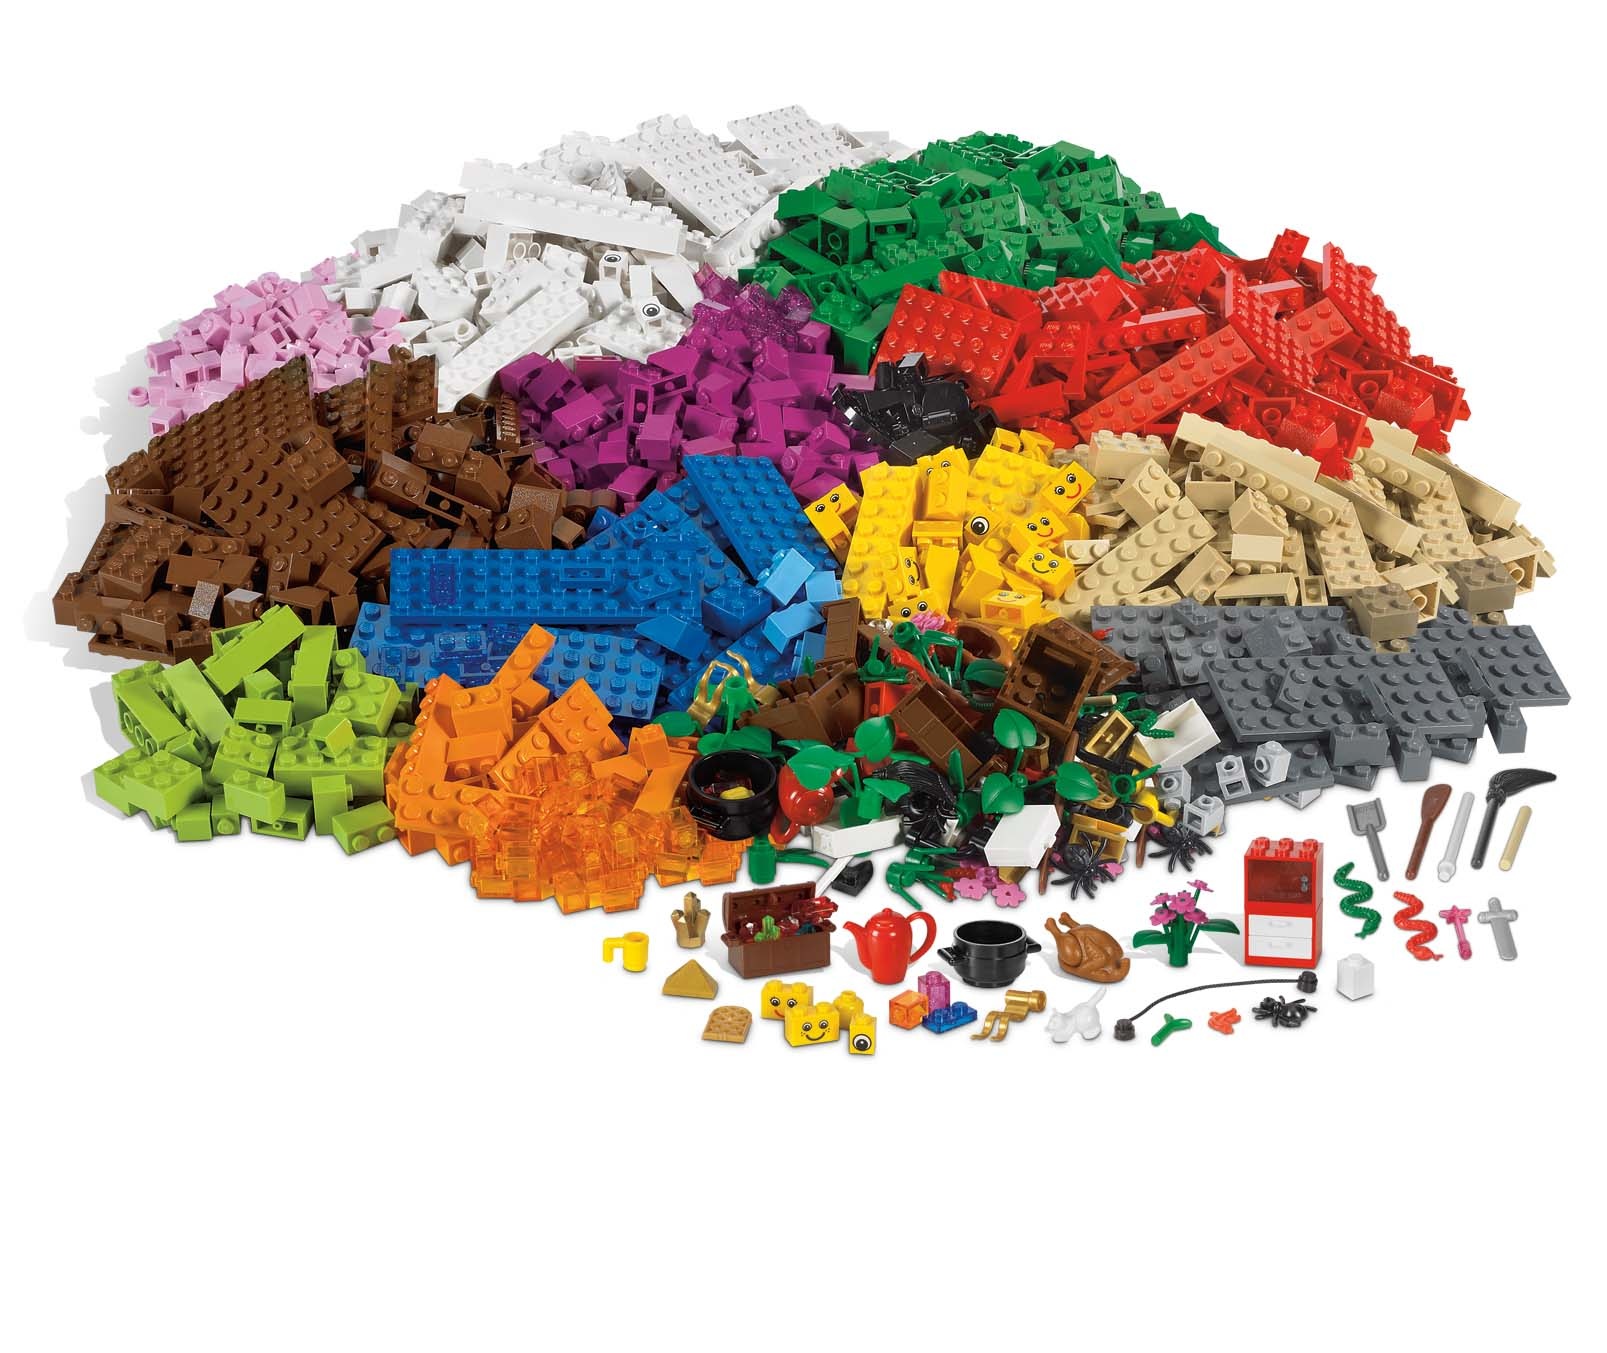 Compliment gips wenselijk LEGO grote basisset scenario - Kinderspel ®